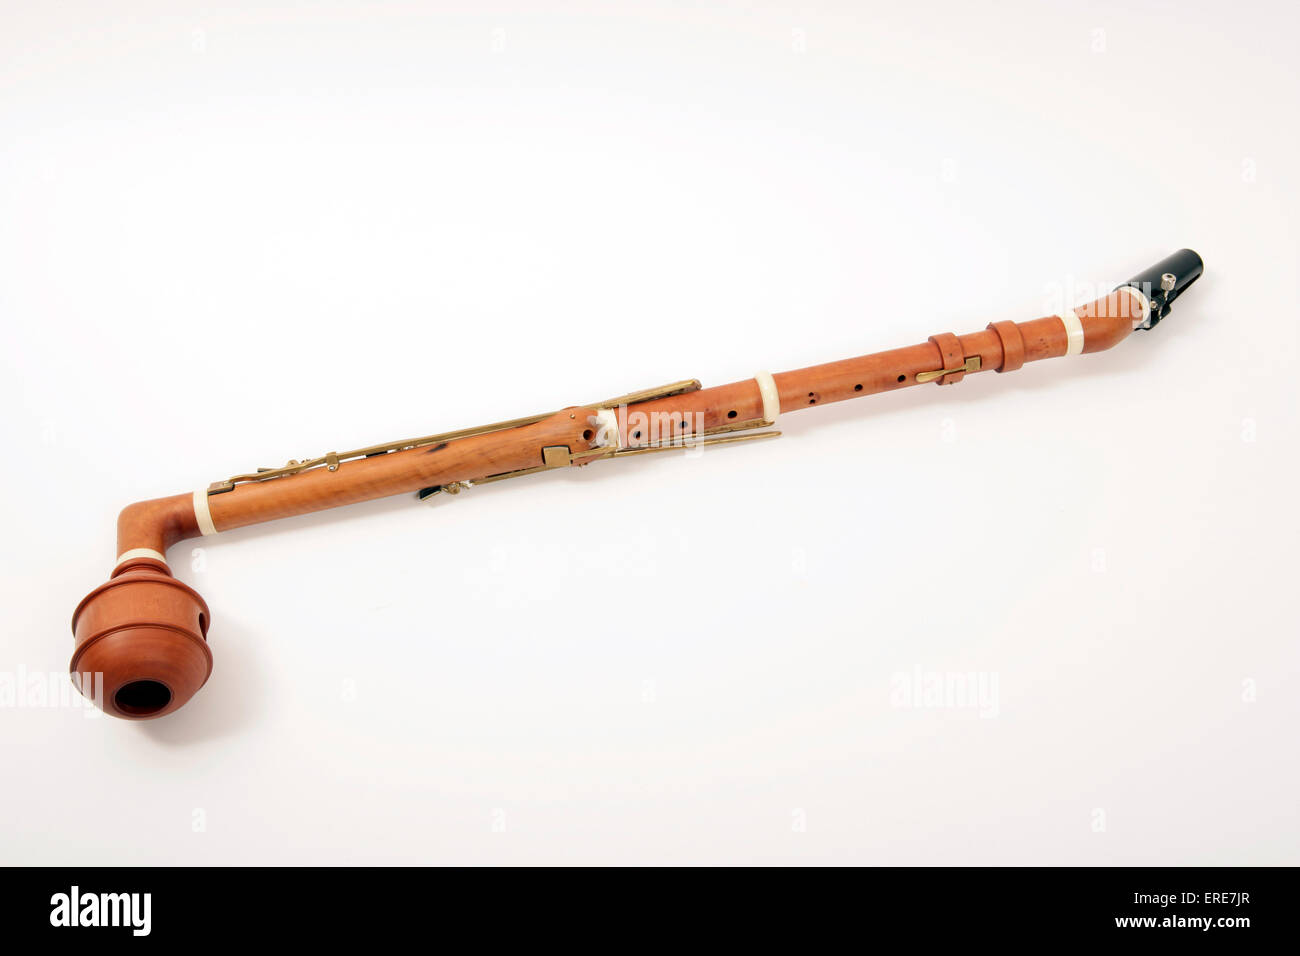 Bassettklarinette, historischen Instrumenten, Kopie eines Instruments für Anton Stadler in den 1700er Jahren gemacht. Klassik. Stockfoto